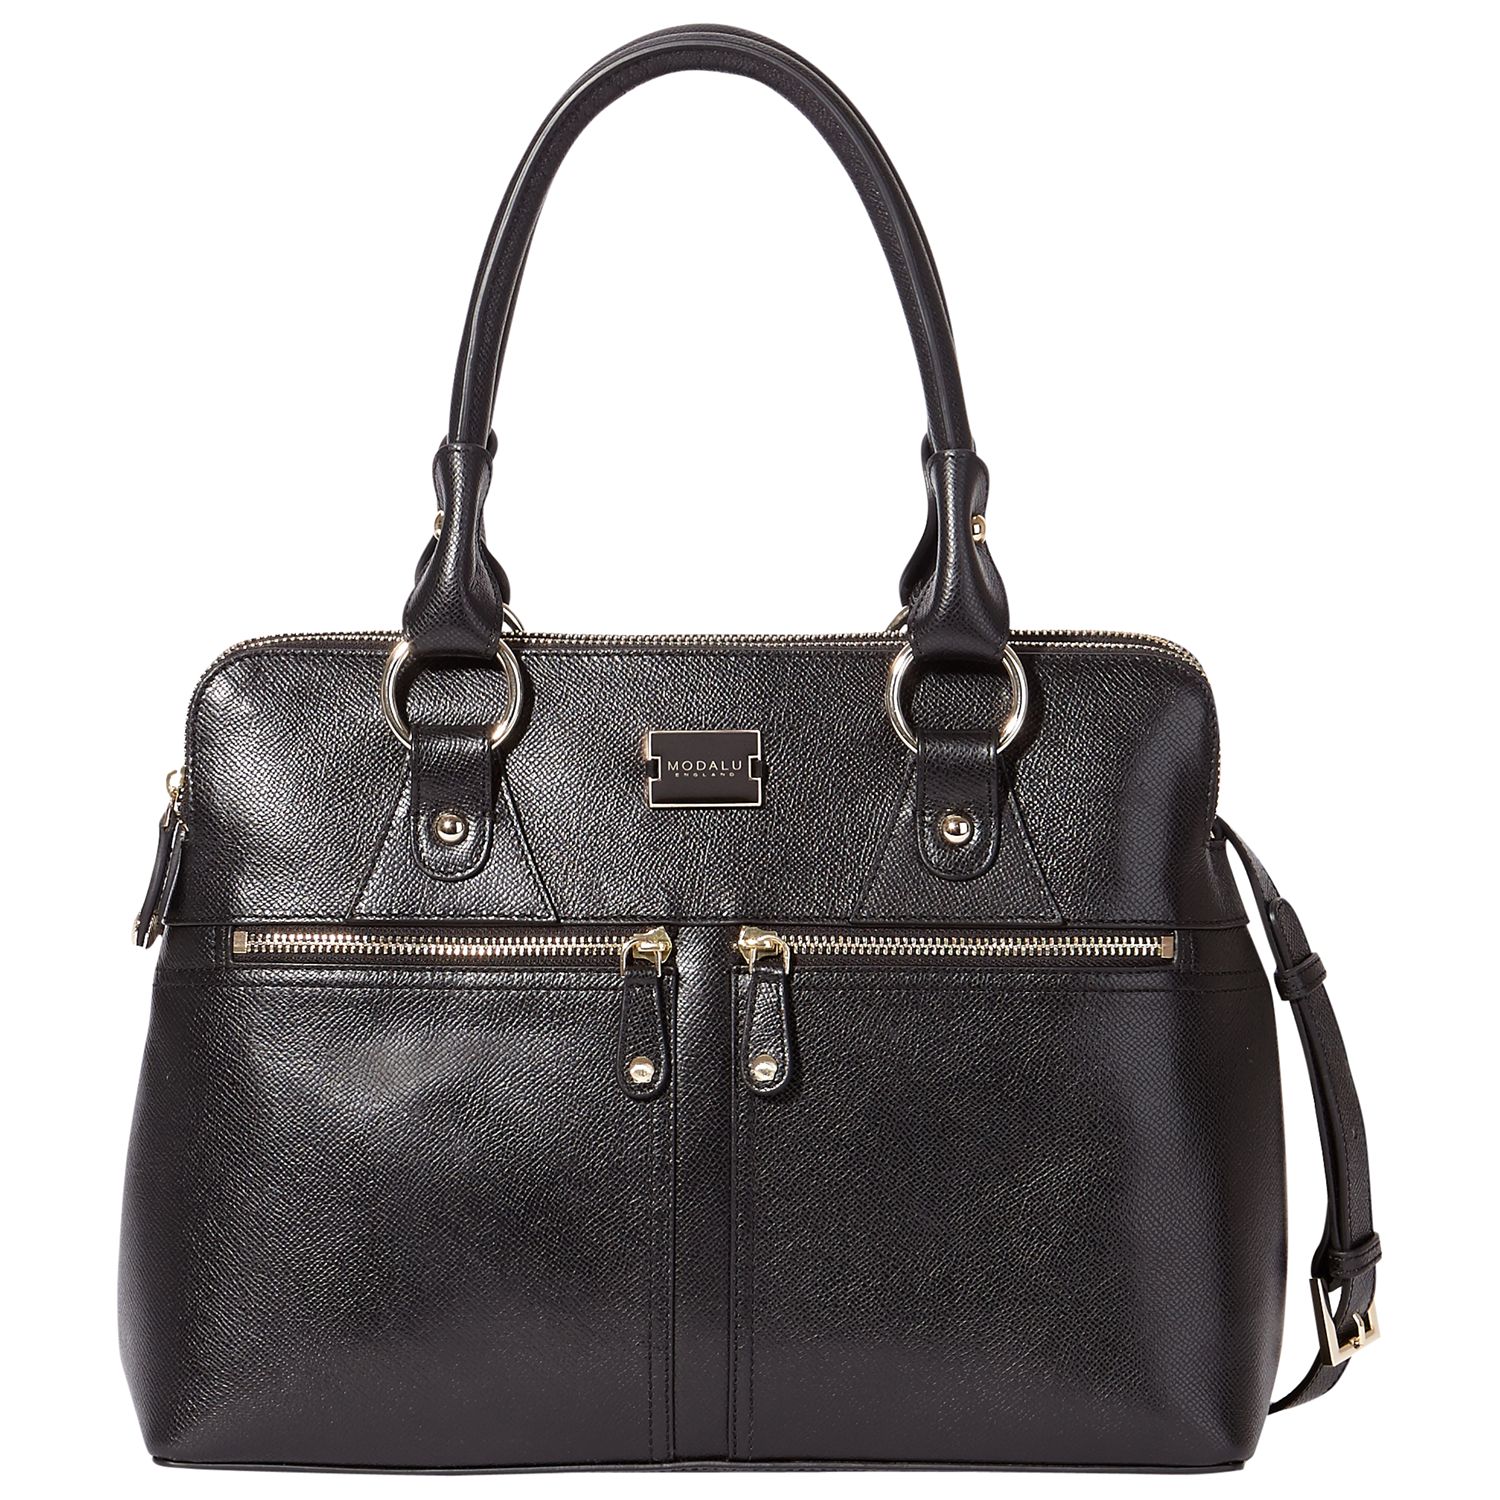 Modalu Pippa Classic Grab Bag at John Lewis & Partners